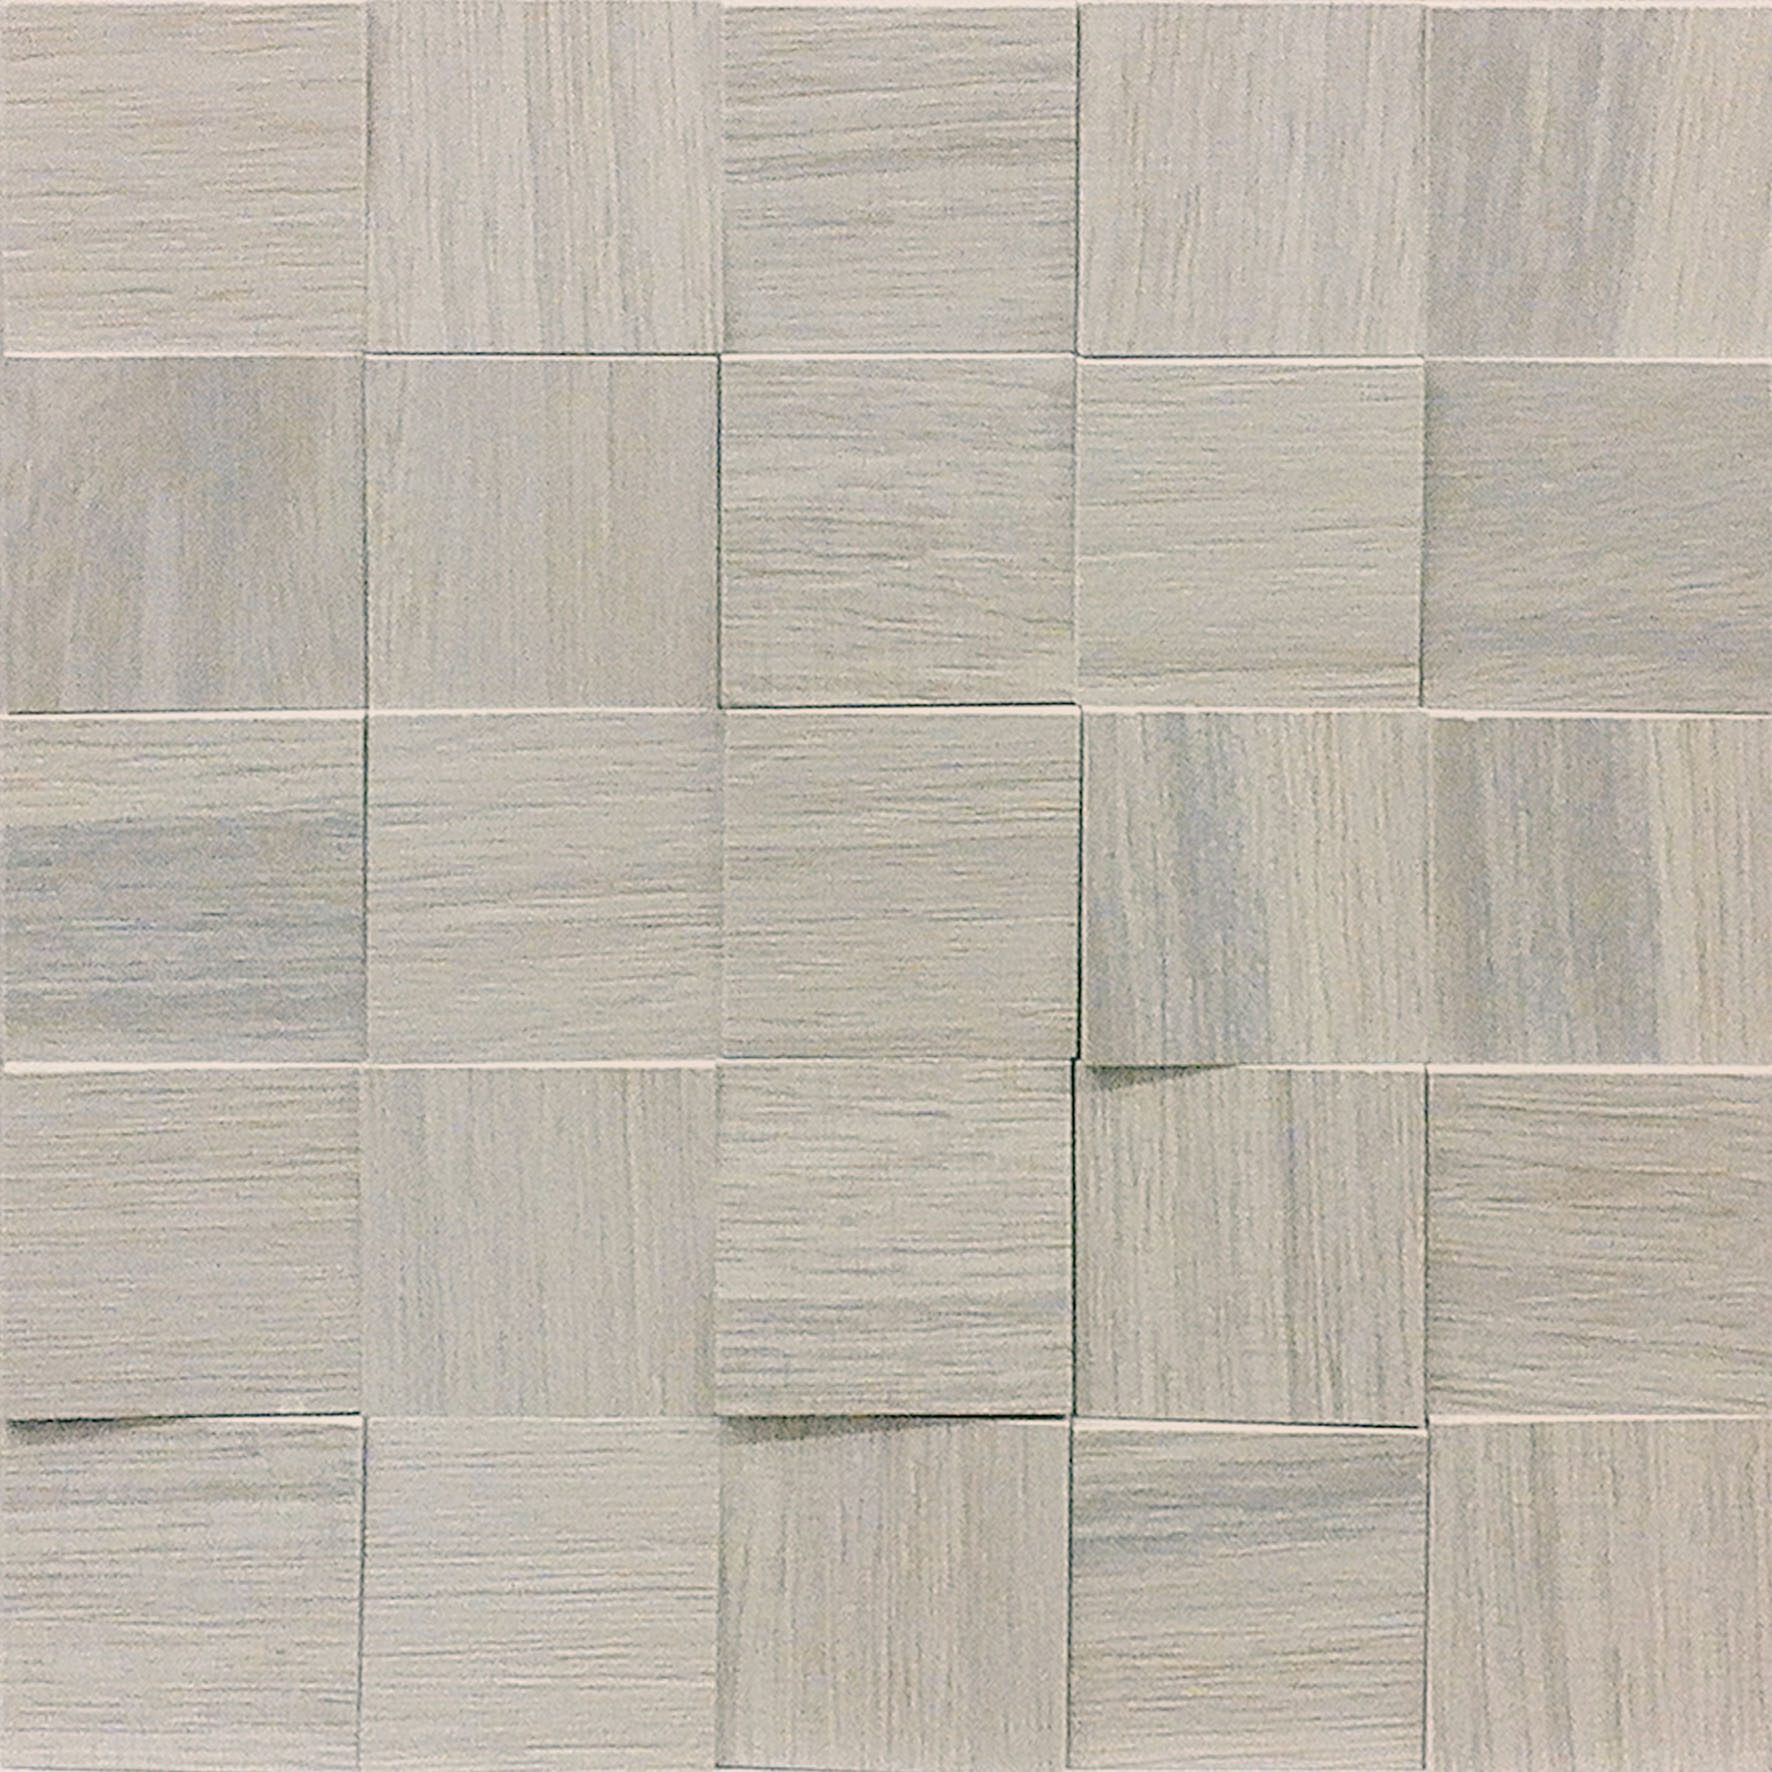 Casa Dolce Casa Wooden Tile Wooden Gray 2x2 3D Mosaic